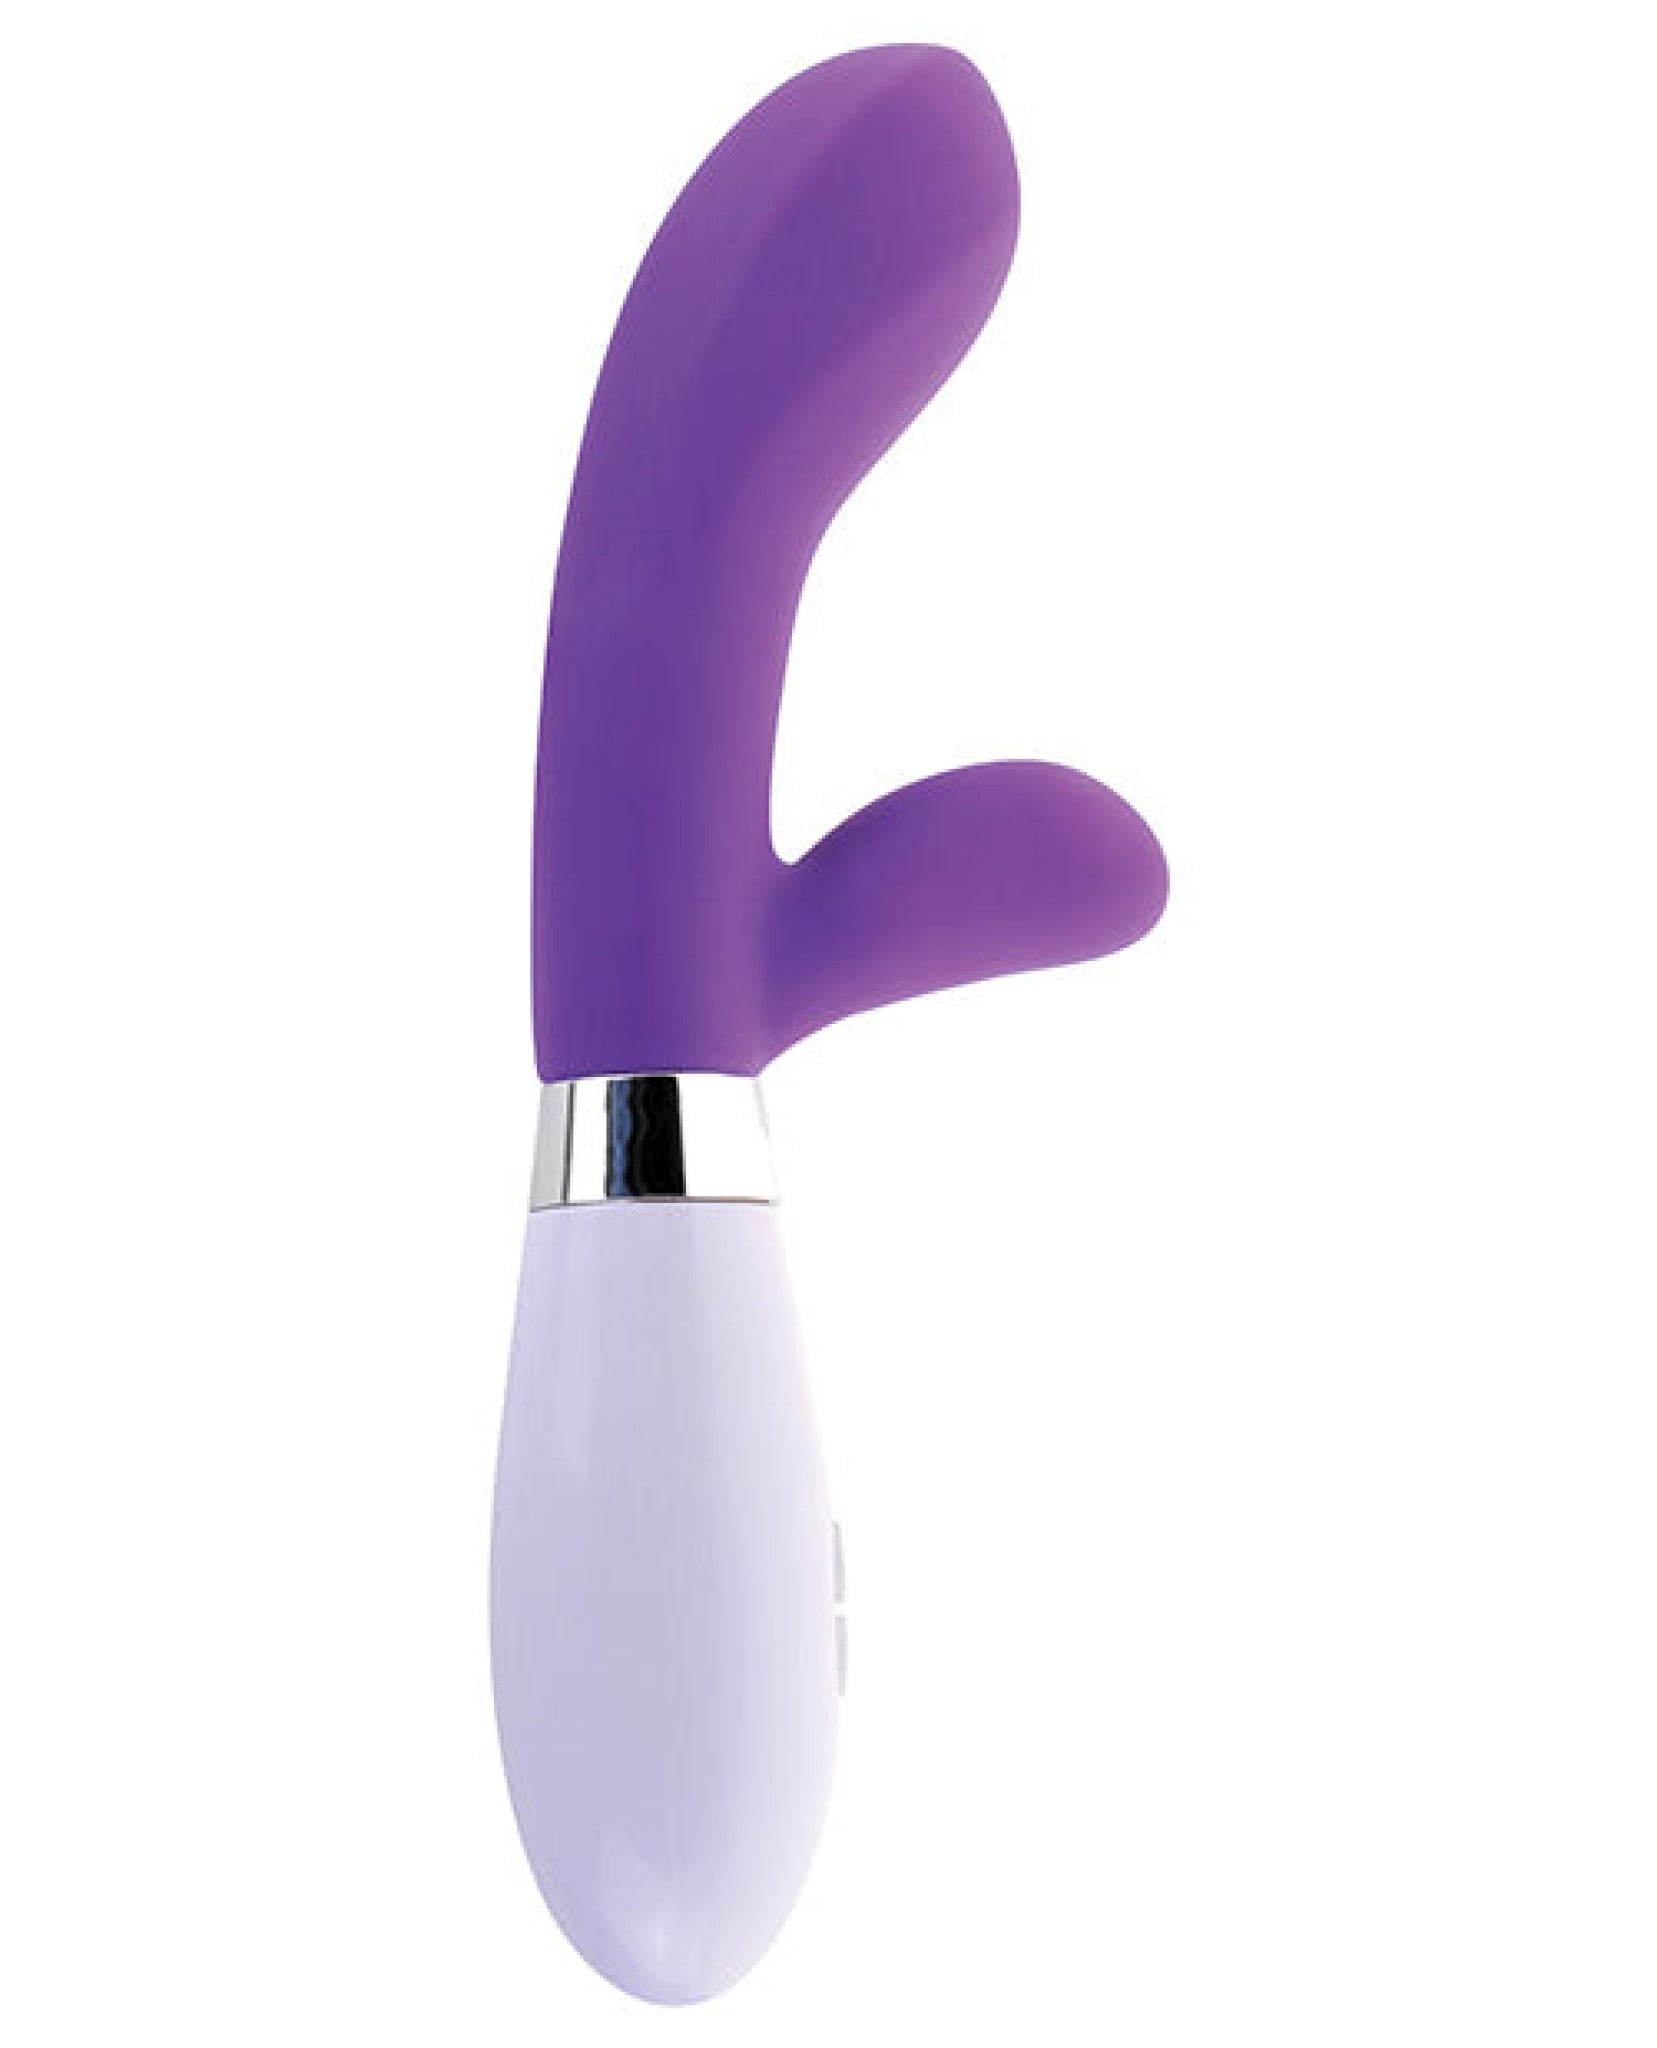 Classix Silicone G-spot Rabbit - Purple Pipedream®